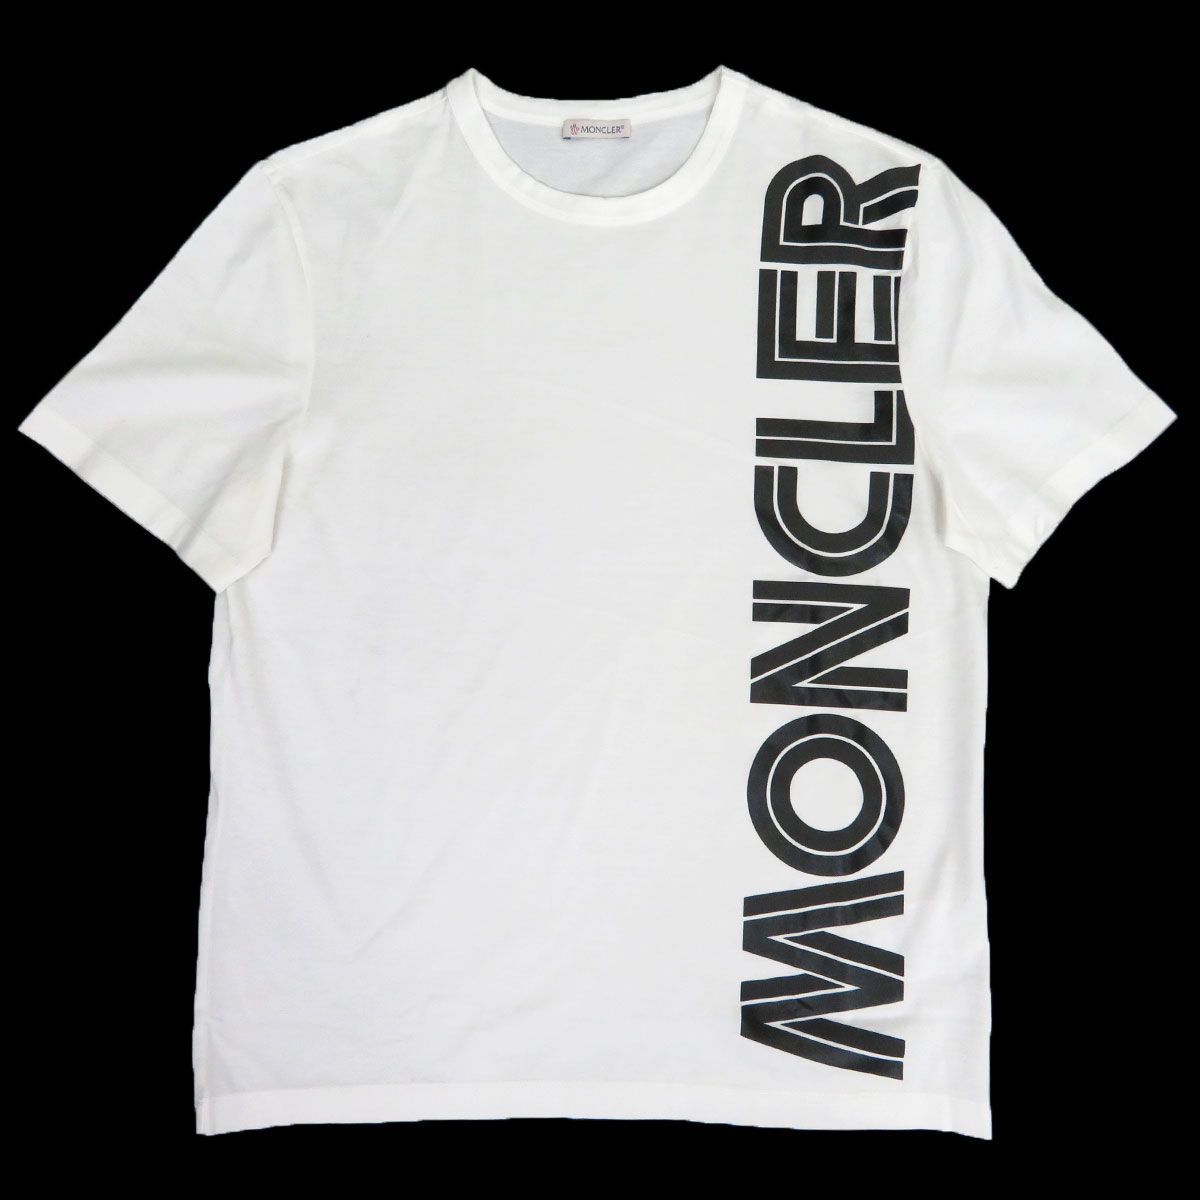 モンクレール MAGLIA T SHIRT マグリア Tシャツ 20年製 ロゴ 8C760 10 8390Y メンズ [美品] 【アパレル】